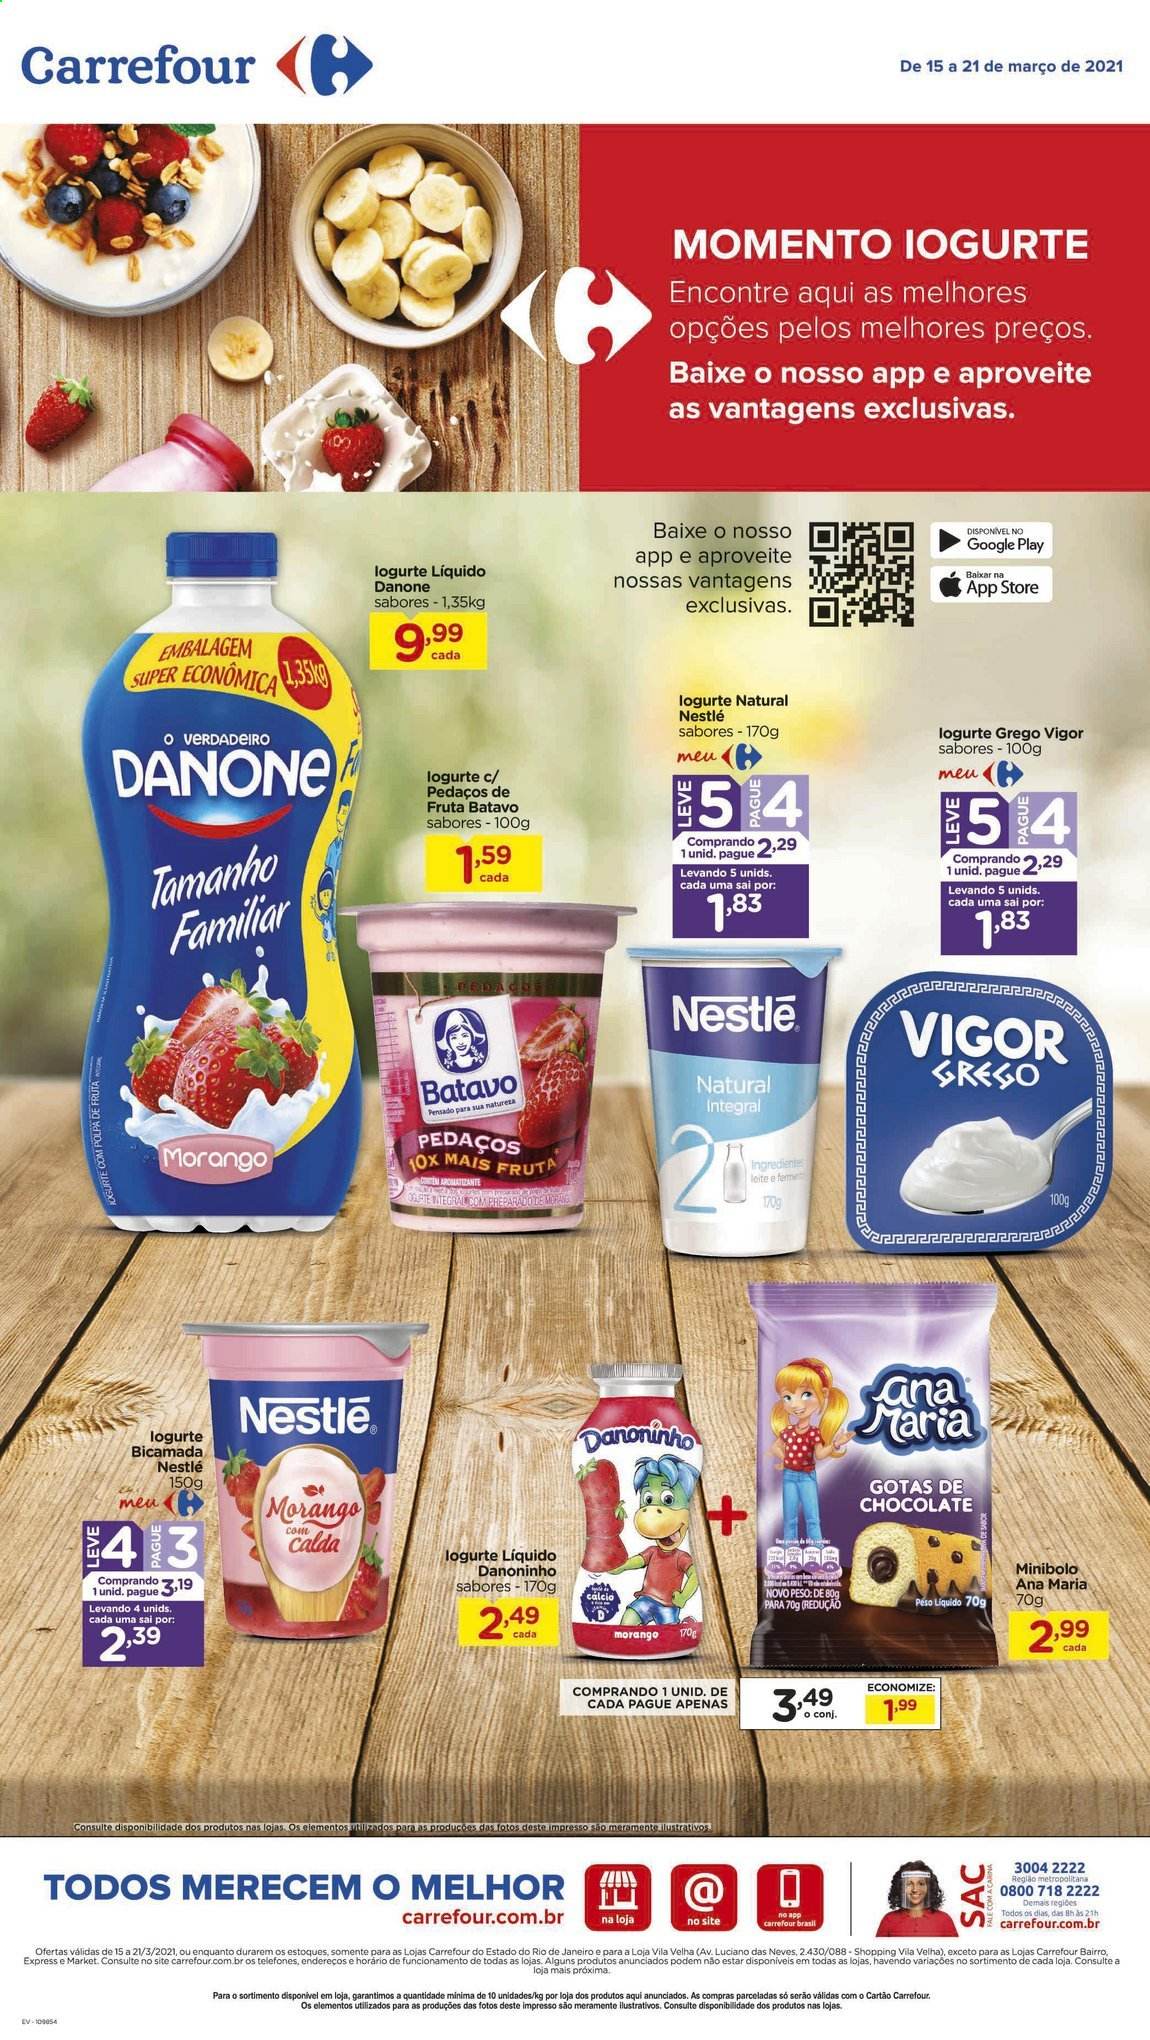 thumbnail - Folheto Carrefour Hiper - 15/03/2021 - 21/03/2021 - Produtos em promoção - iogurte, Danone, leite, Nestlé, Vigor. Página 1.